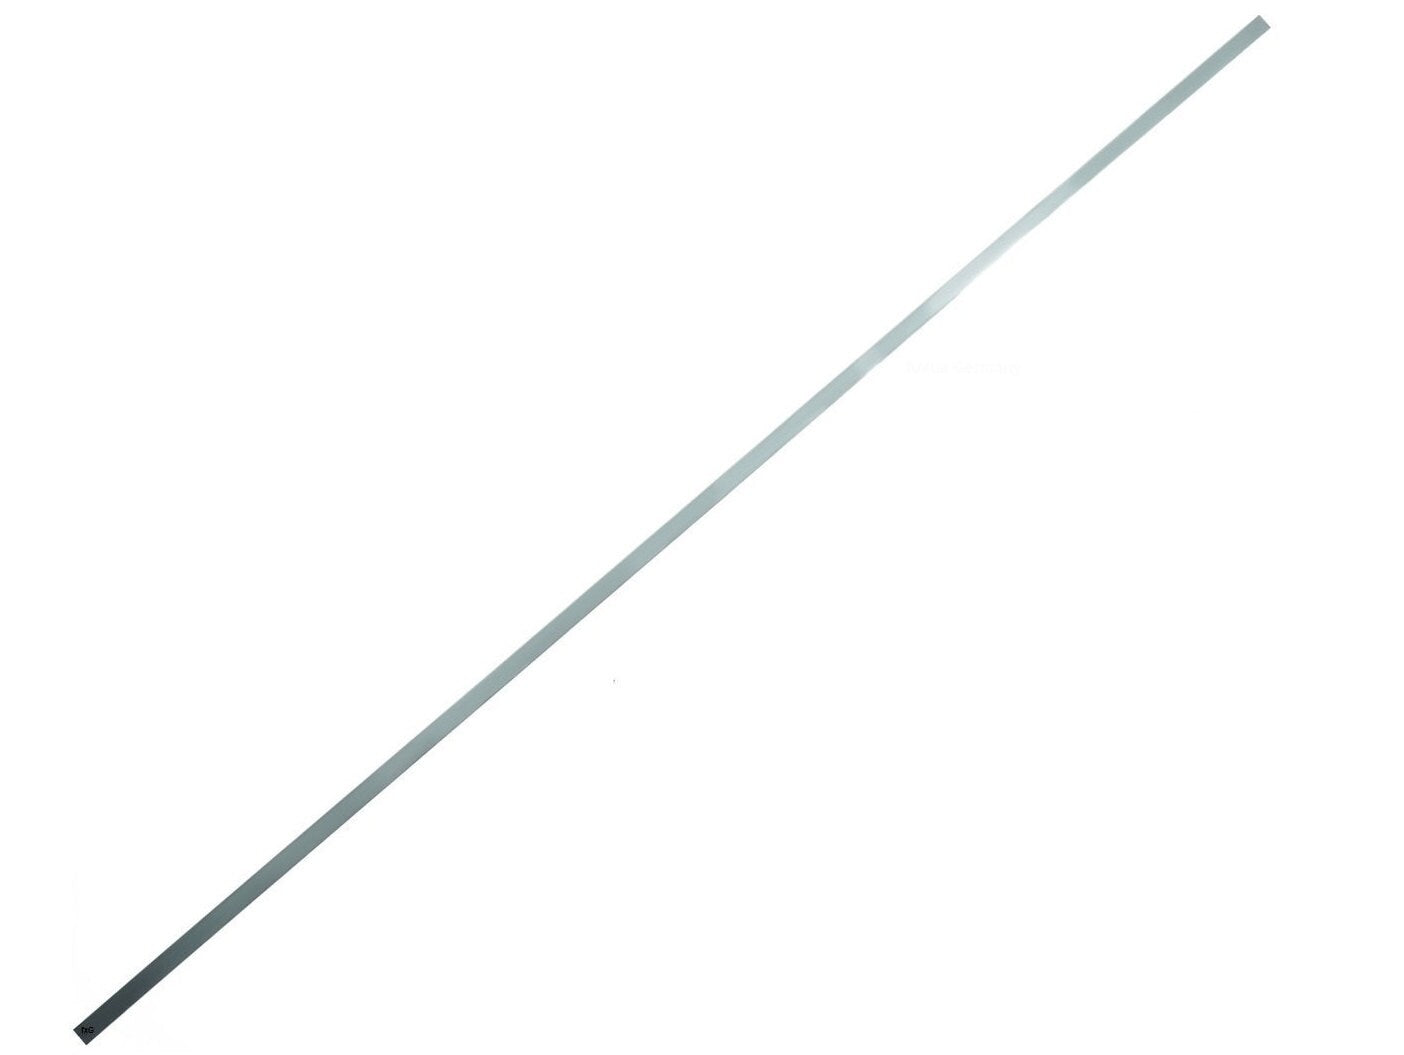 Tira de metal fuxus Nitinol banda de metal de aleación con memoria de forma de 5 mm x 400 mm